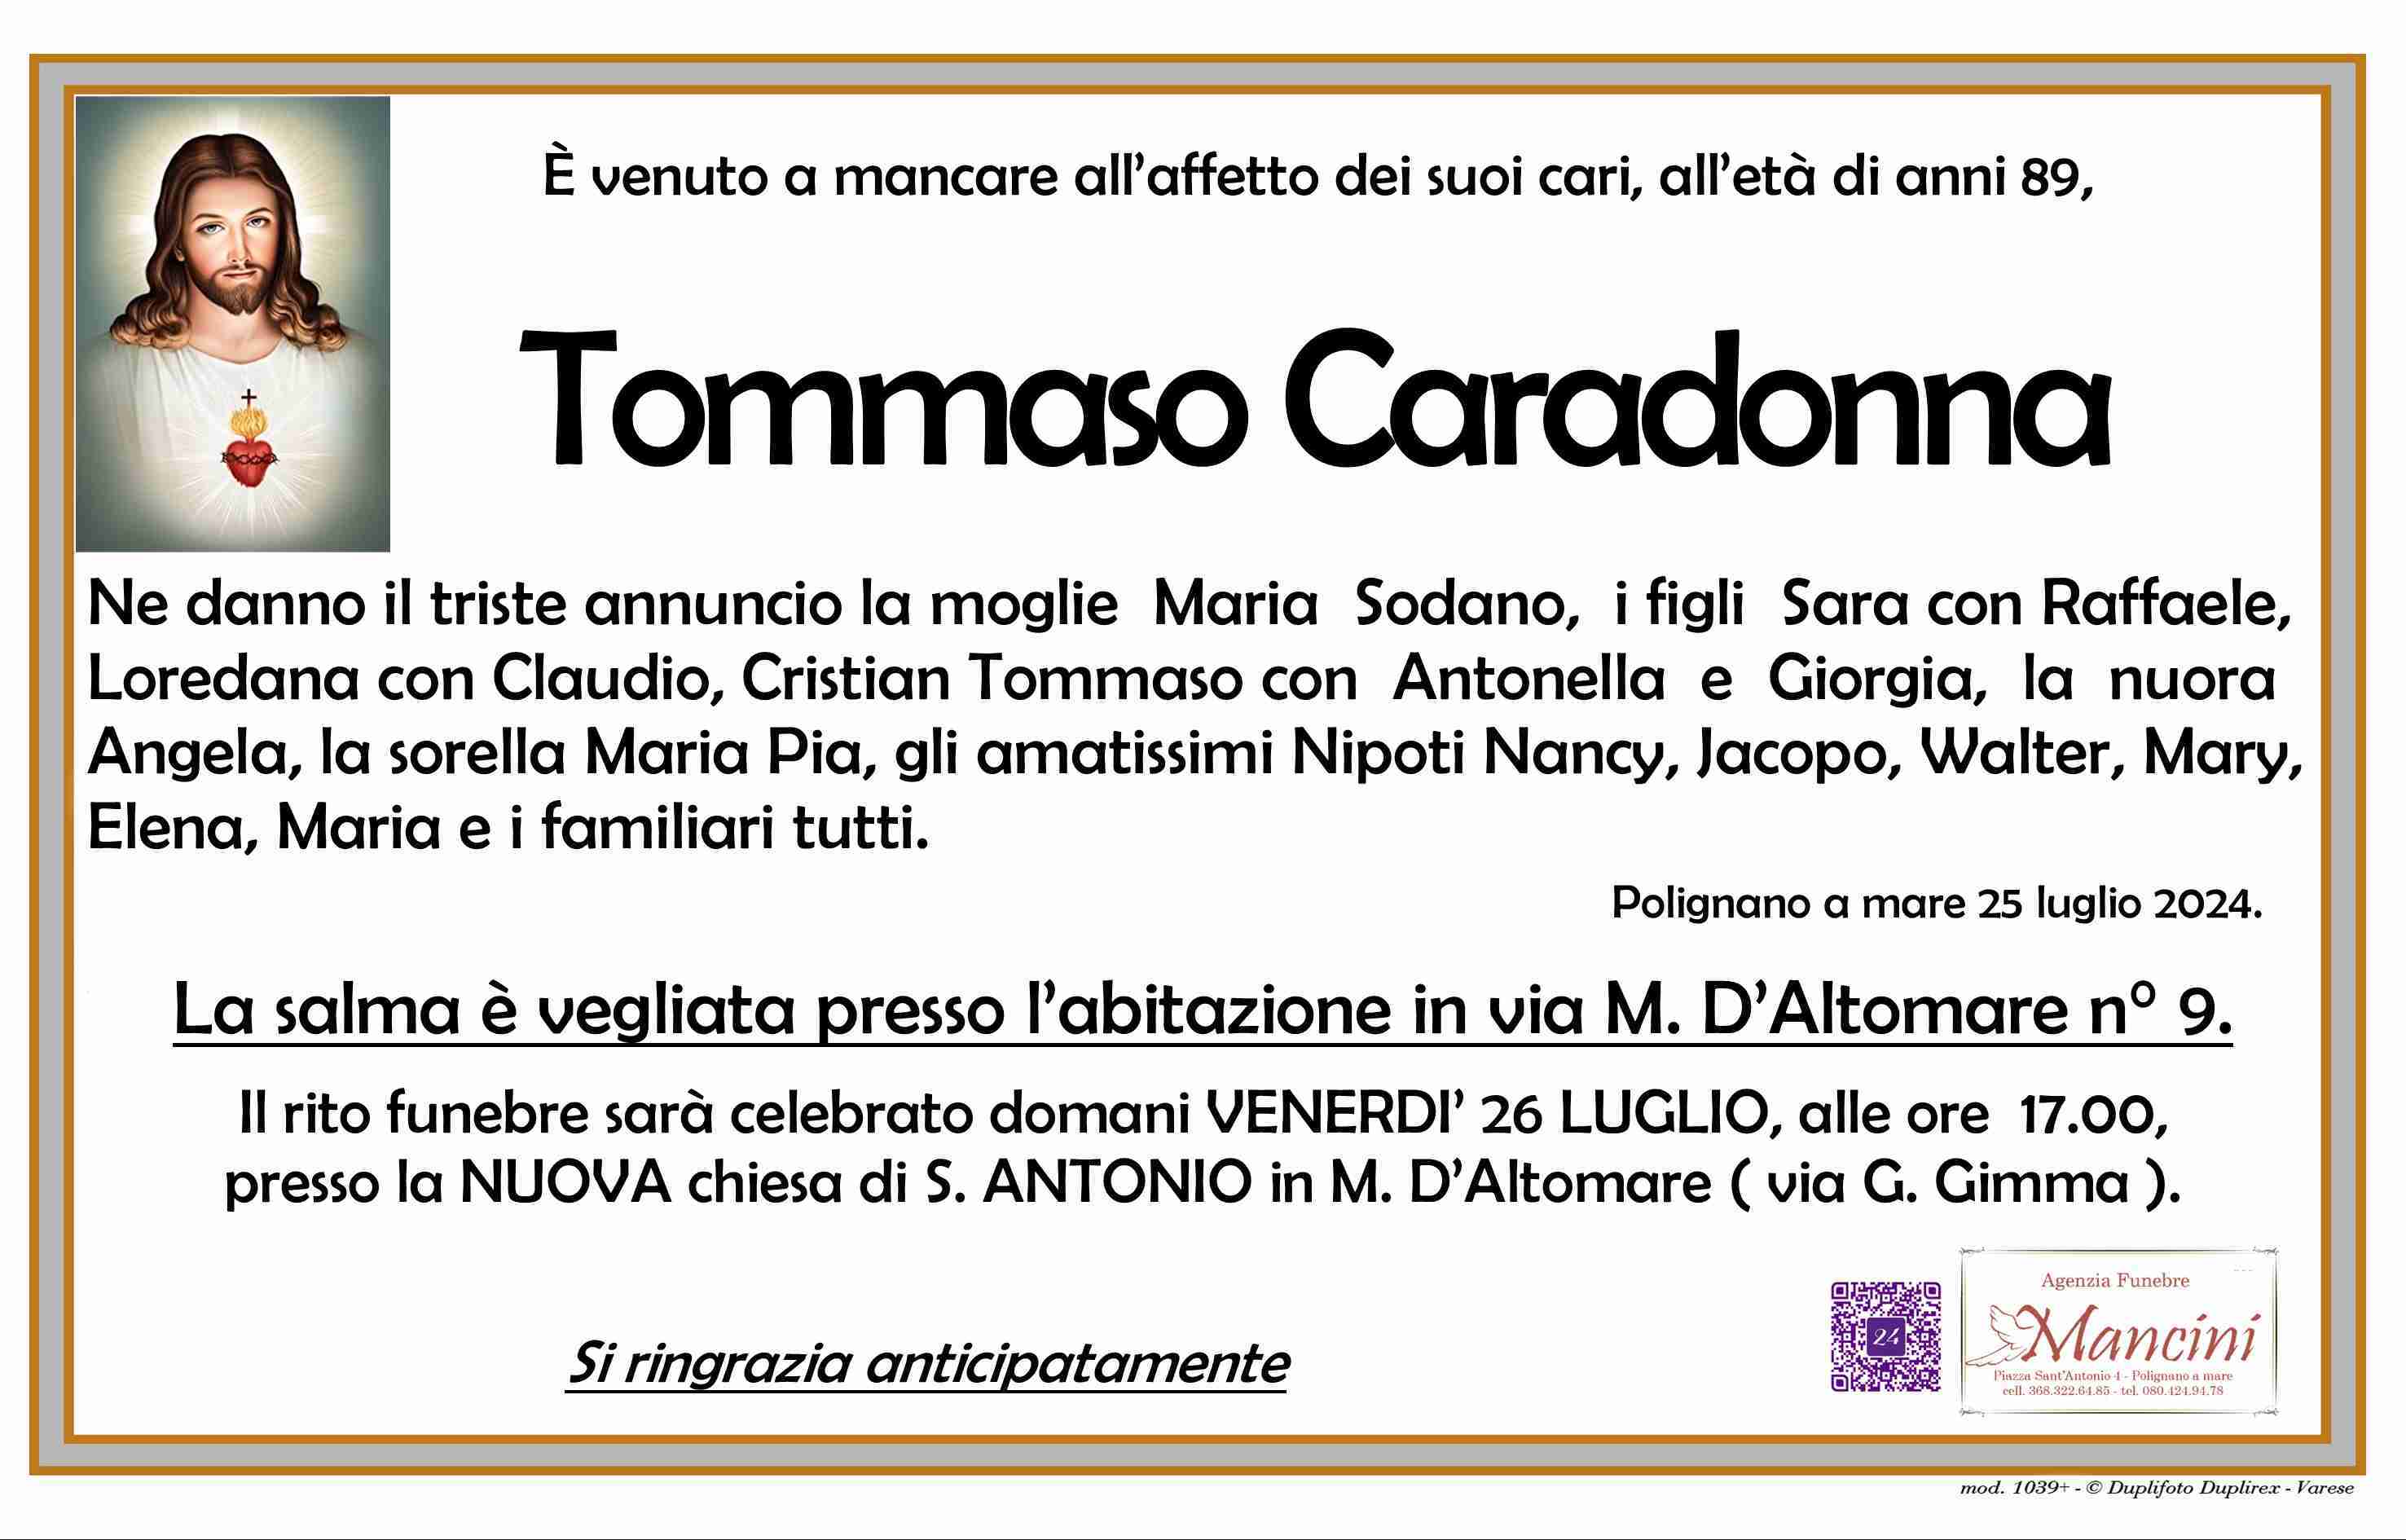 Tommaso Caradonna